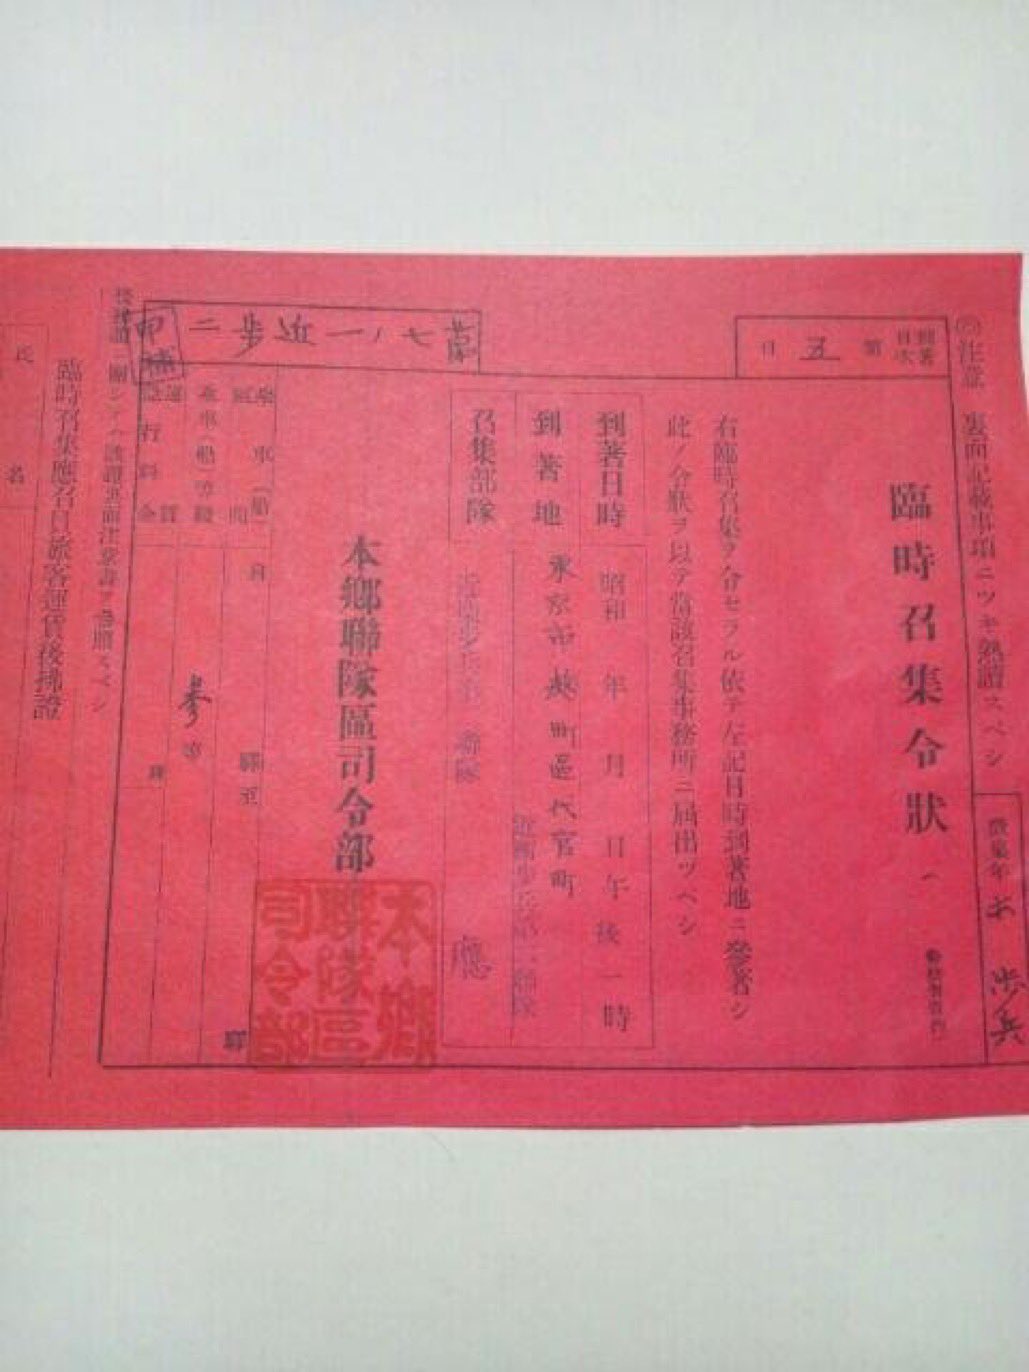 Osakihiroko 赤紙 と呼ばれるこの召集令状は受け取り拒否 を許されず みんな泣く泣く大切な家族を戦地に送り出したそうです 赤紙の配達人は おめでとうございます と届けました 赤紙ひとつで召集出来たのです 戦争はあってはなりませぬ